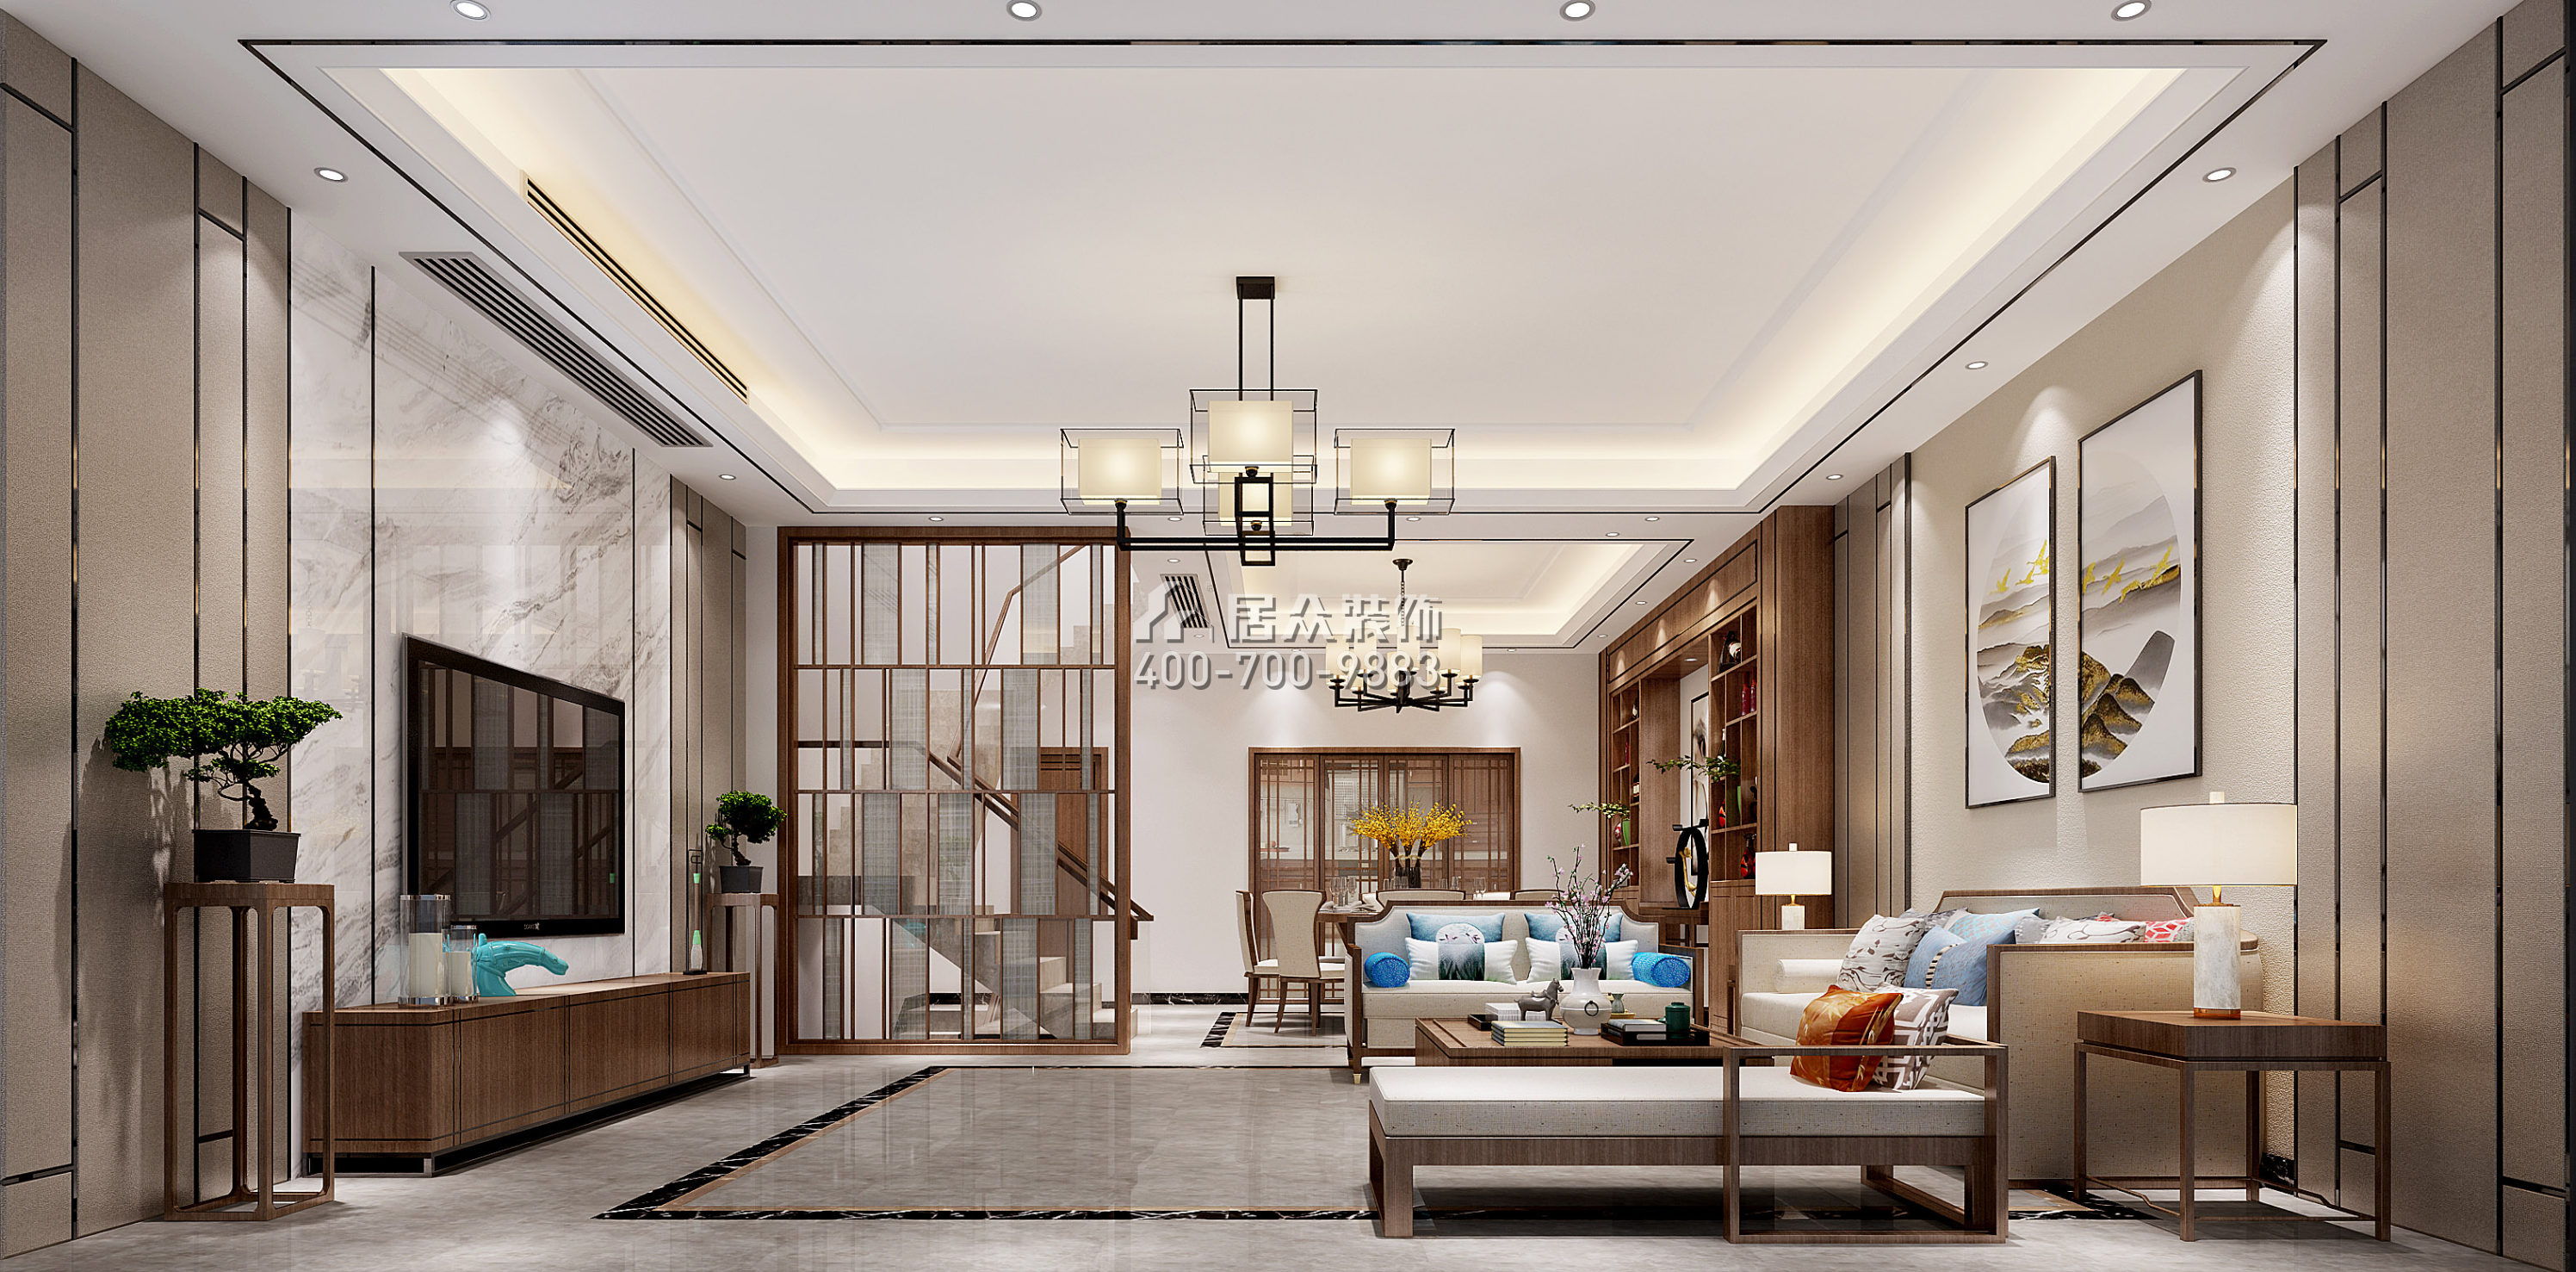 萬科棠樾203平方米中式風格別墅戶型客廳裝修效果圖